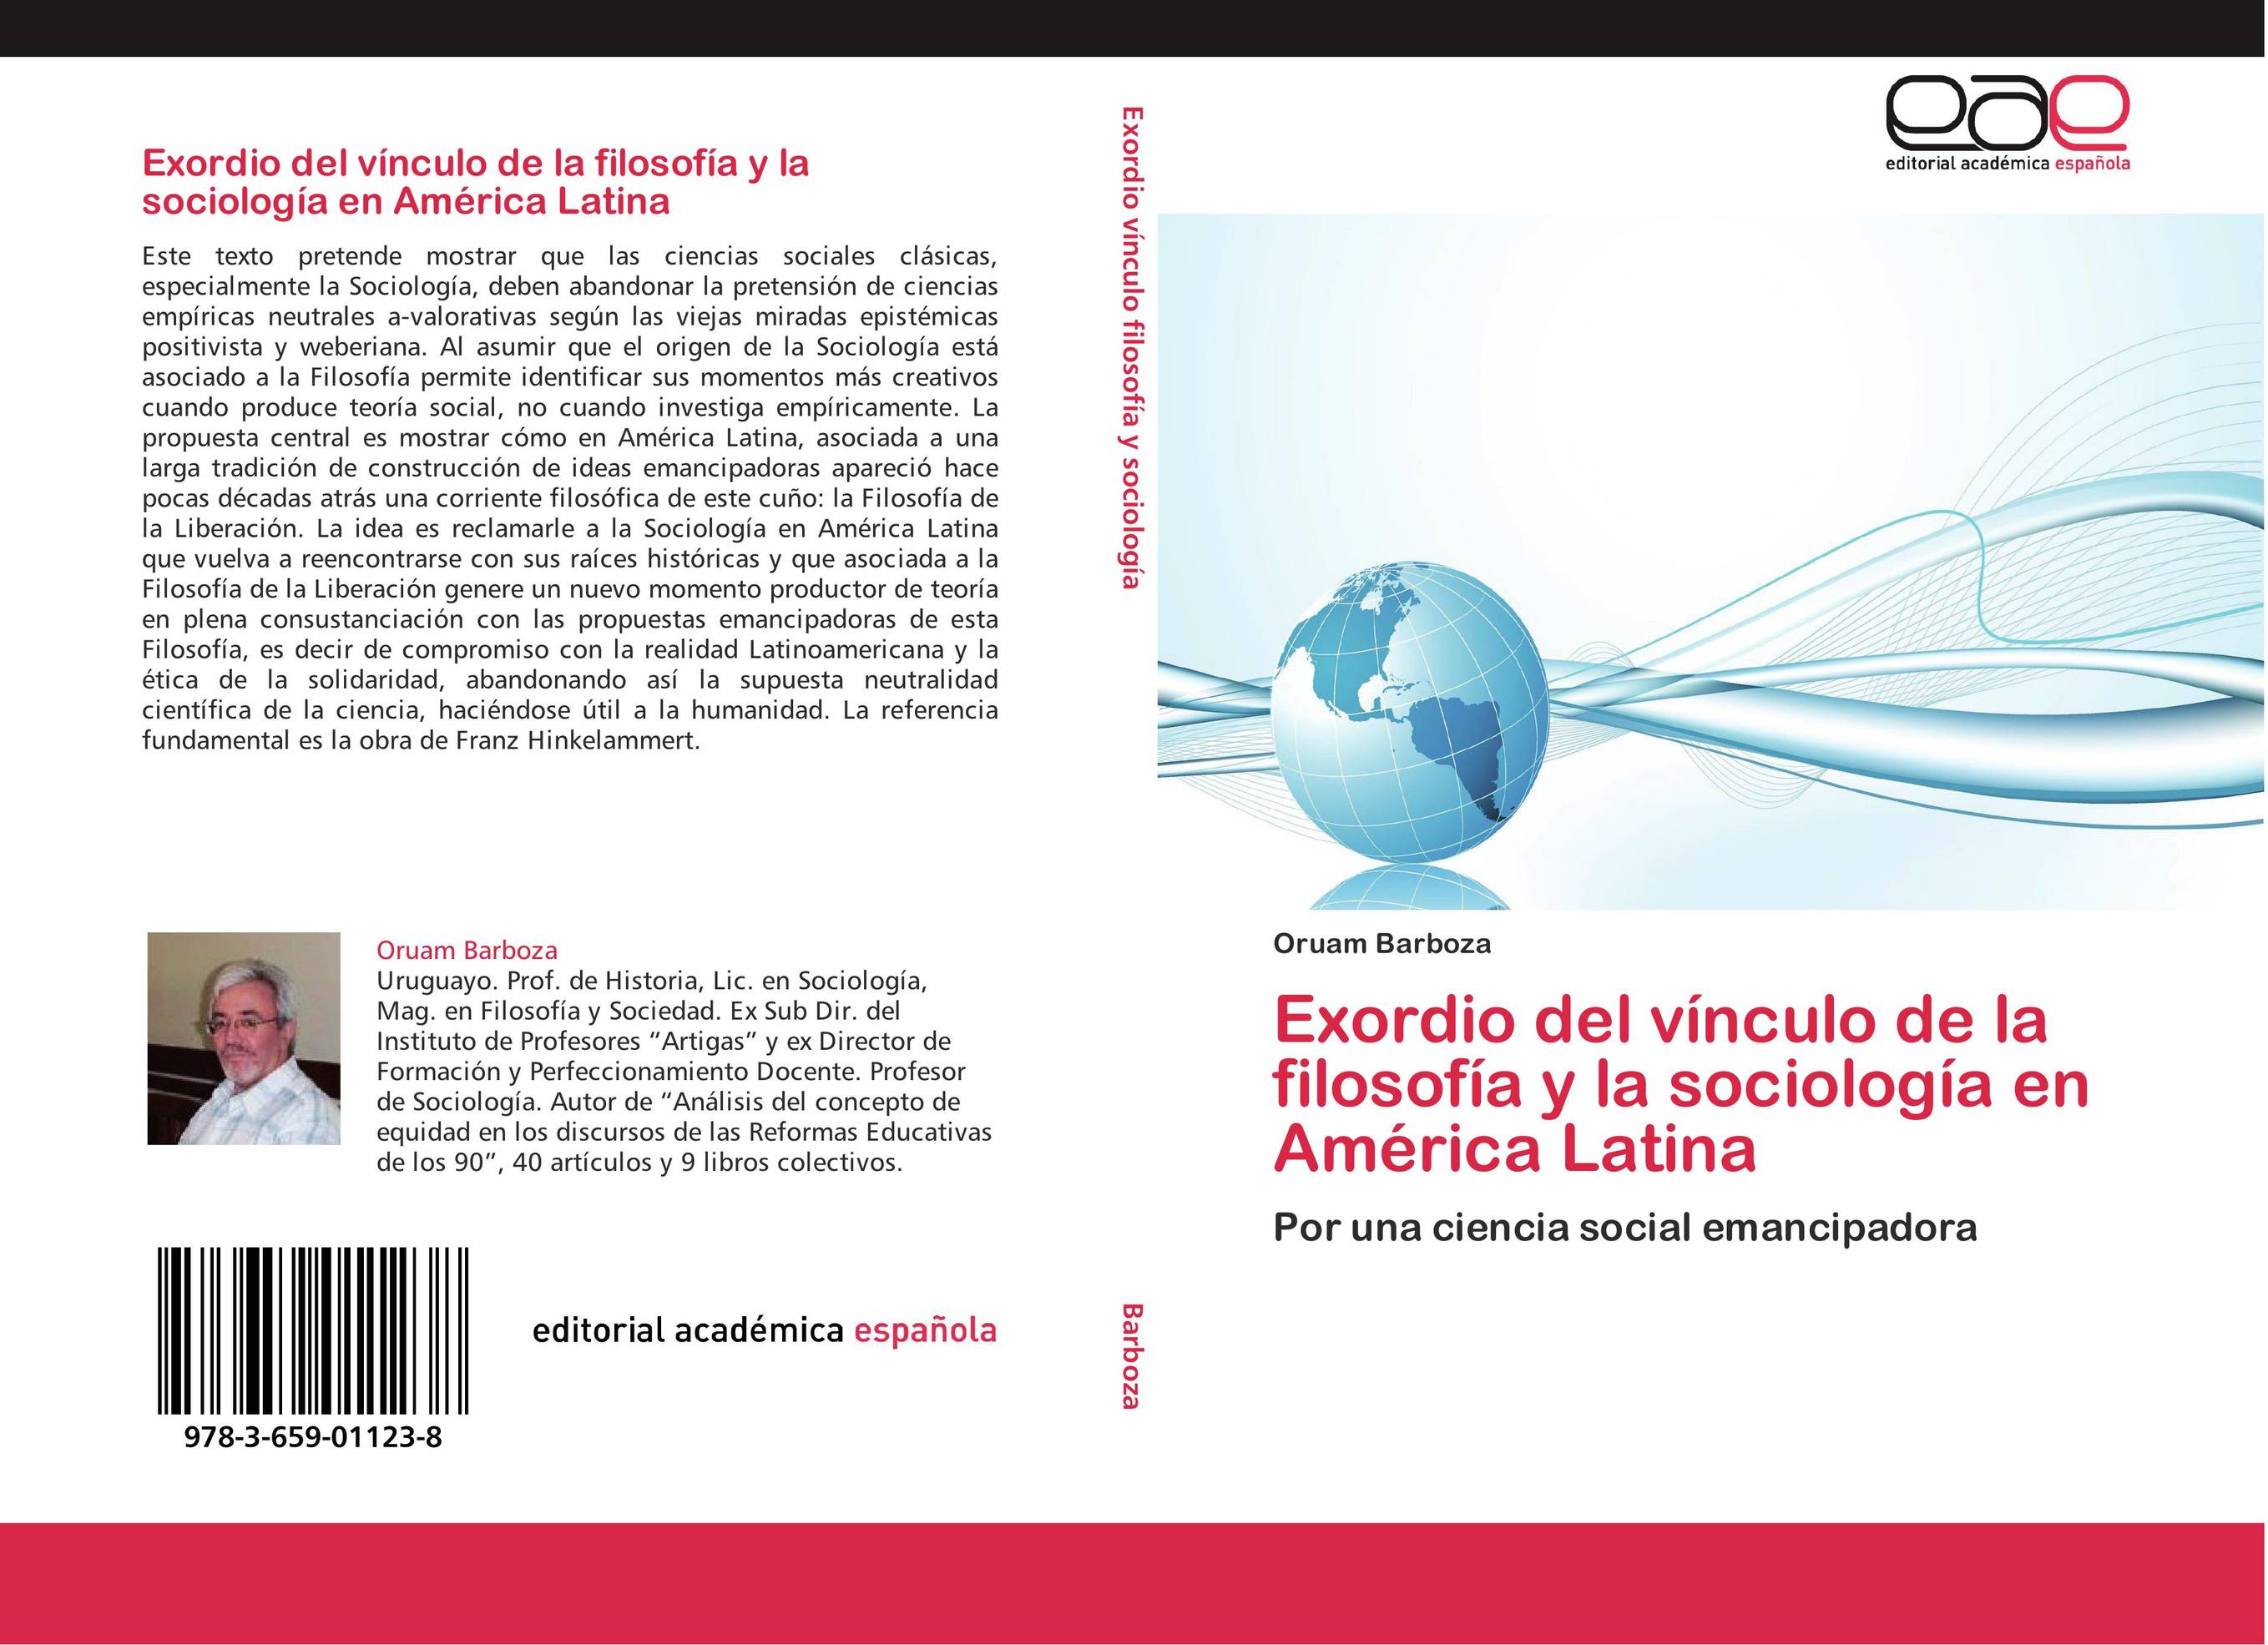 Exordio del vínculo de la filosofía y la sociología en América Latina